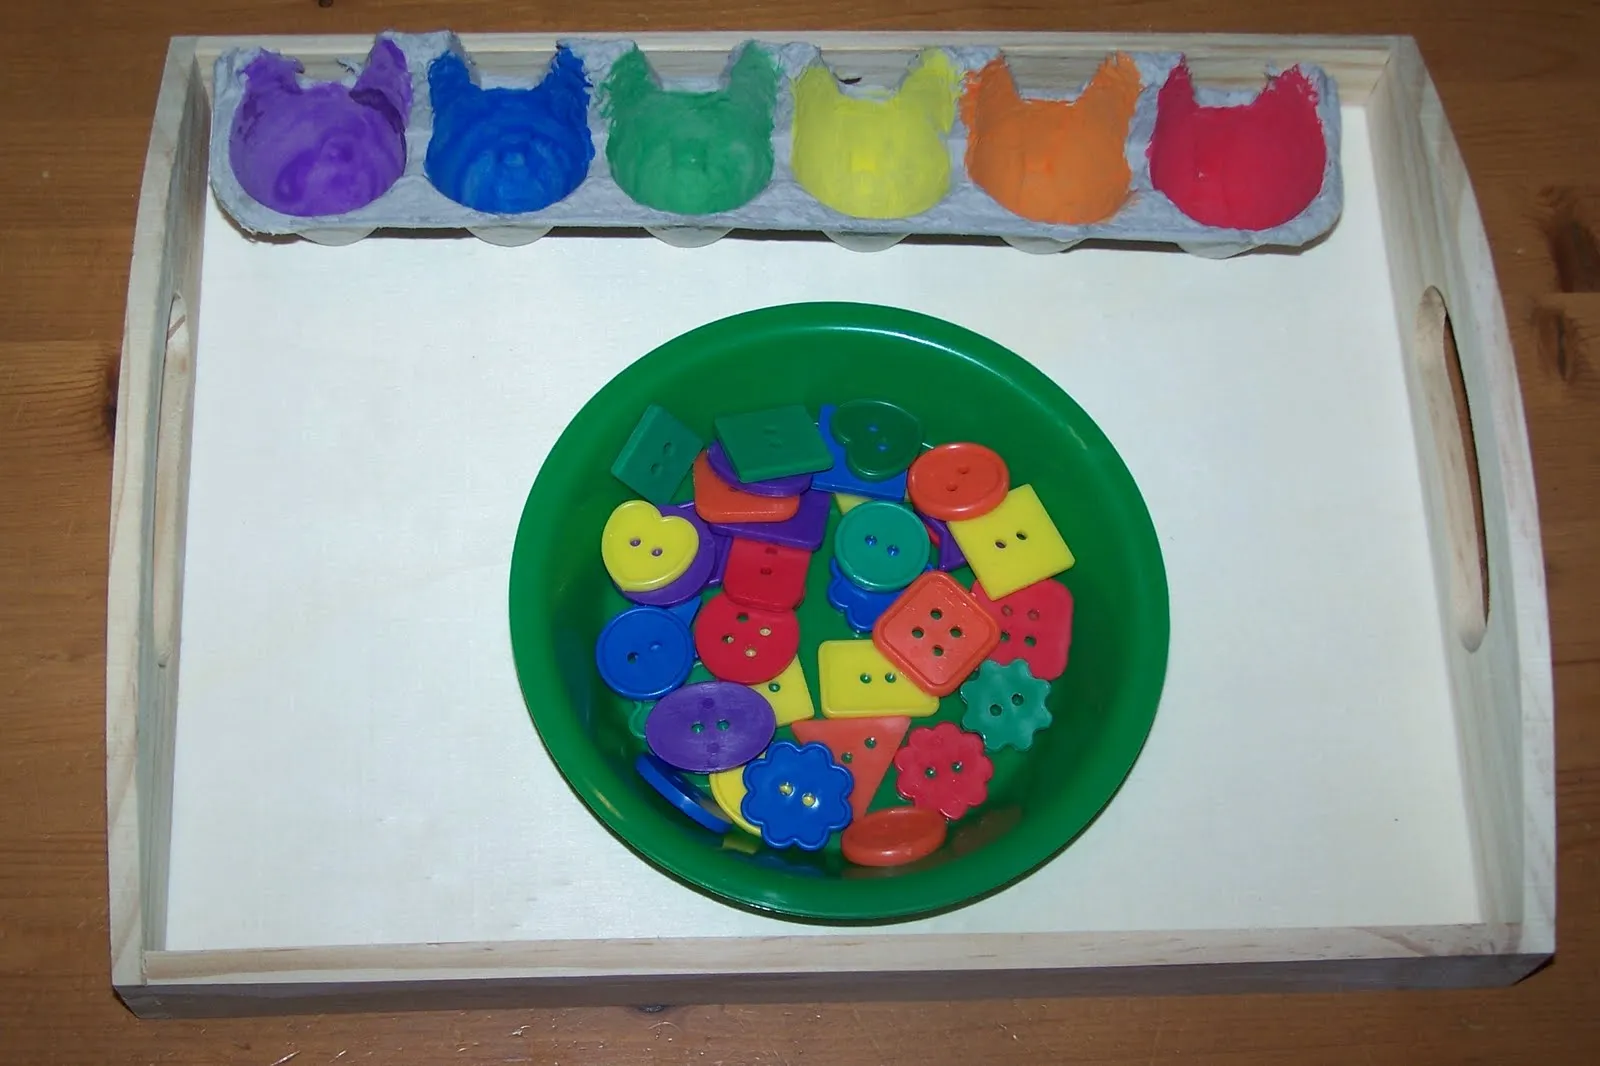 Lógica en infantil: clasificar por colores - Aprendiendo Matemáticas